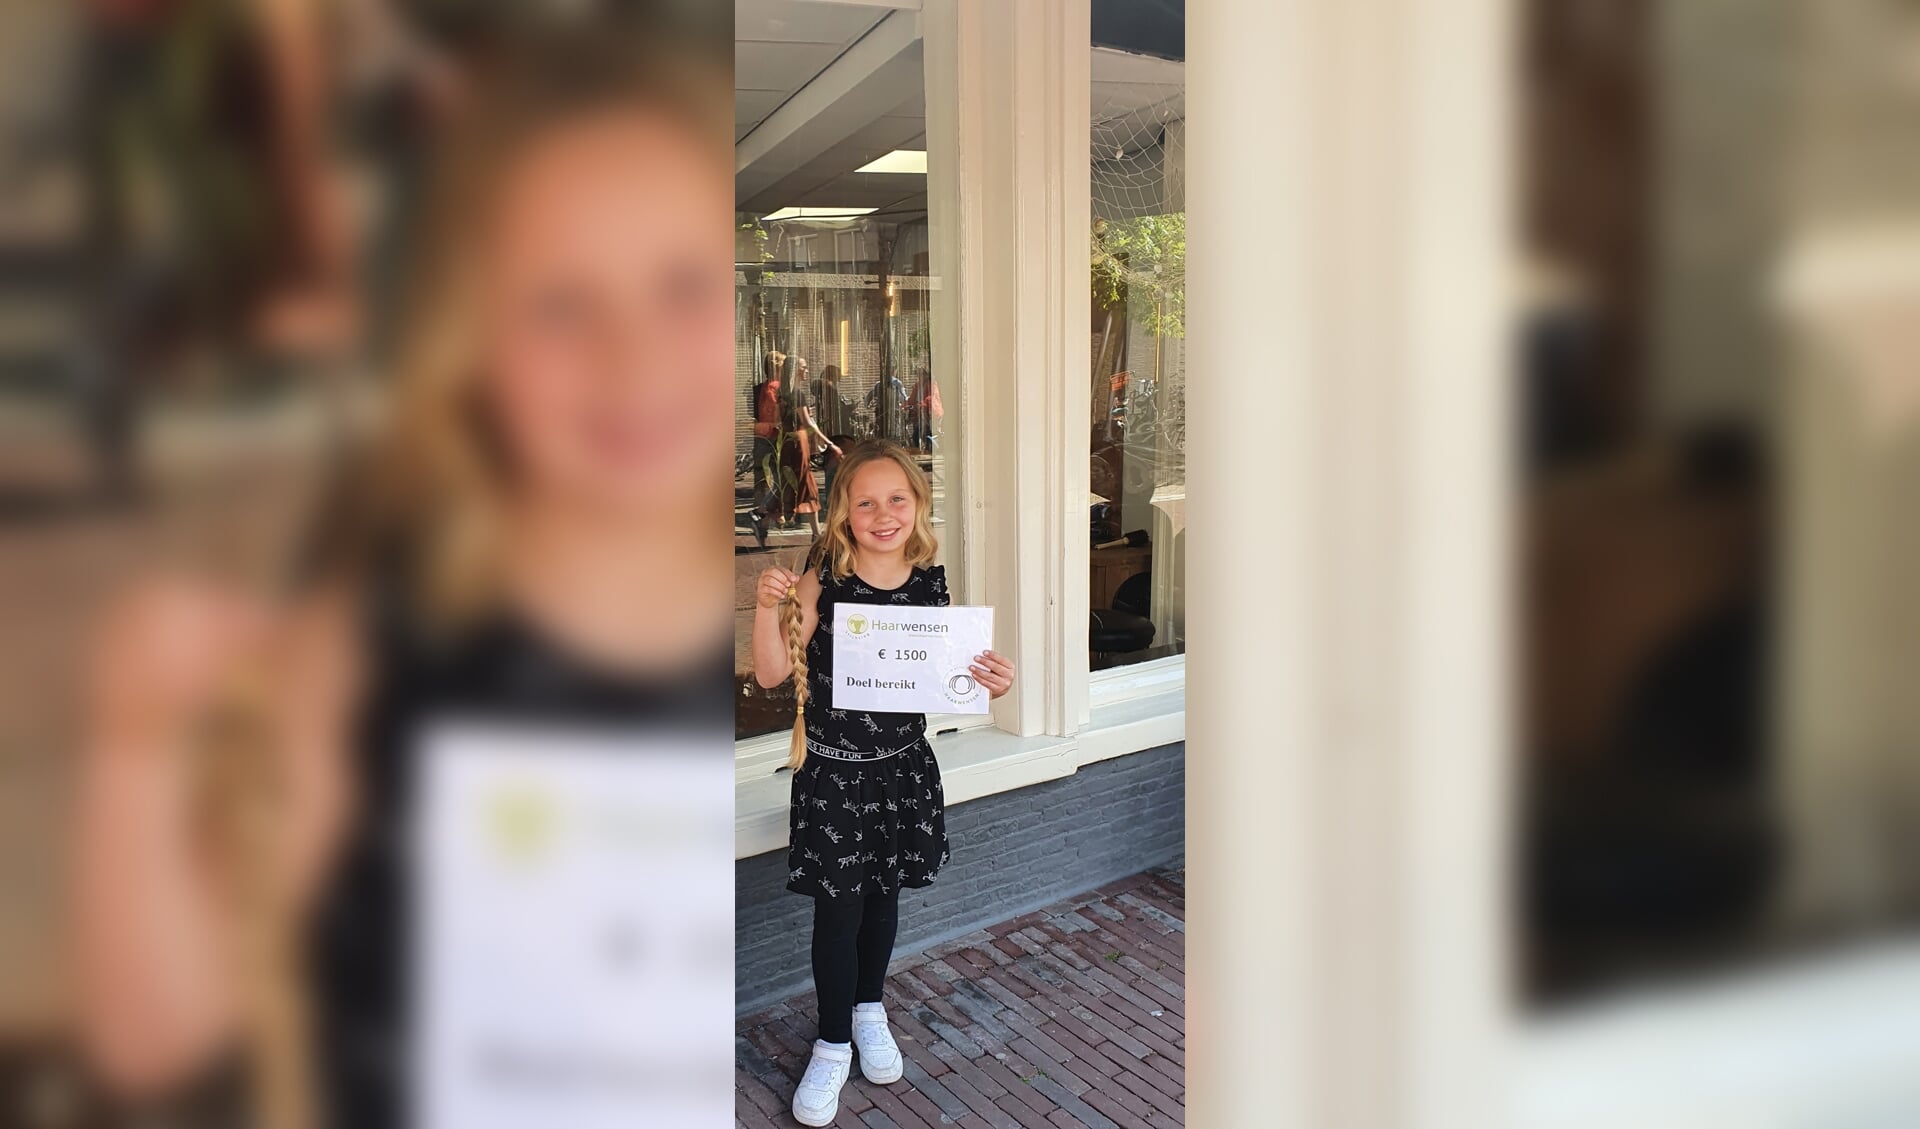 Jaylinn doneerde haar haren plus een cheque van 1500 euro aan Stichting Haarwensen.  